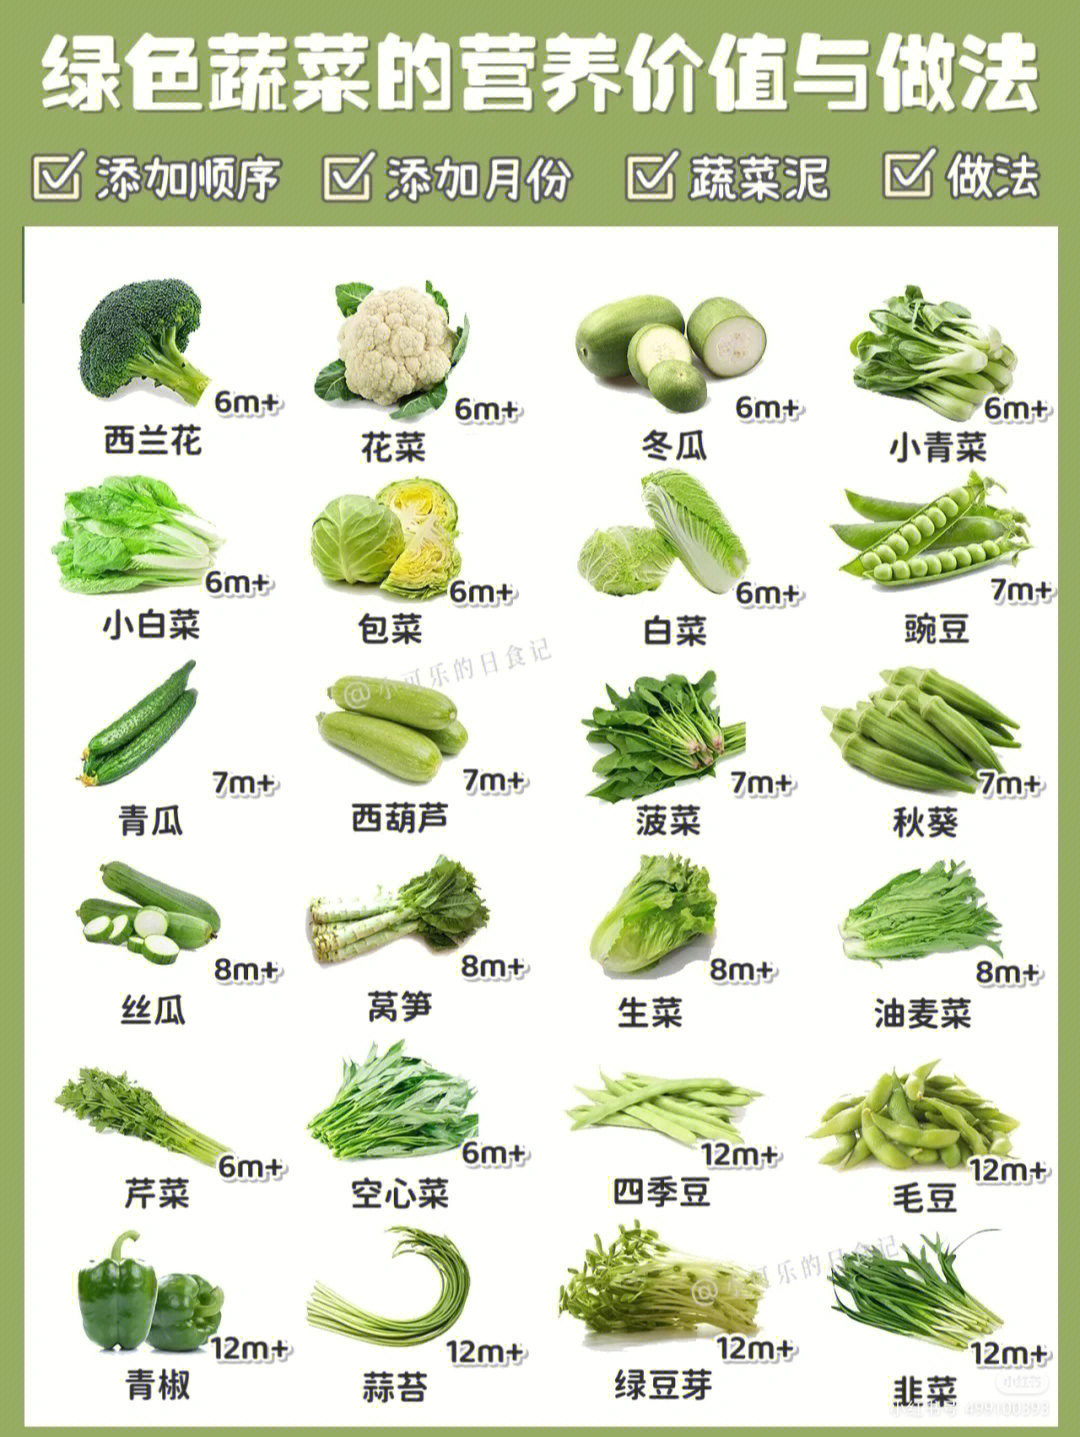 蔬菜属性一览表及图图片